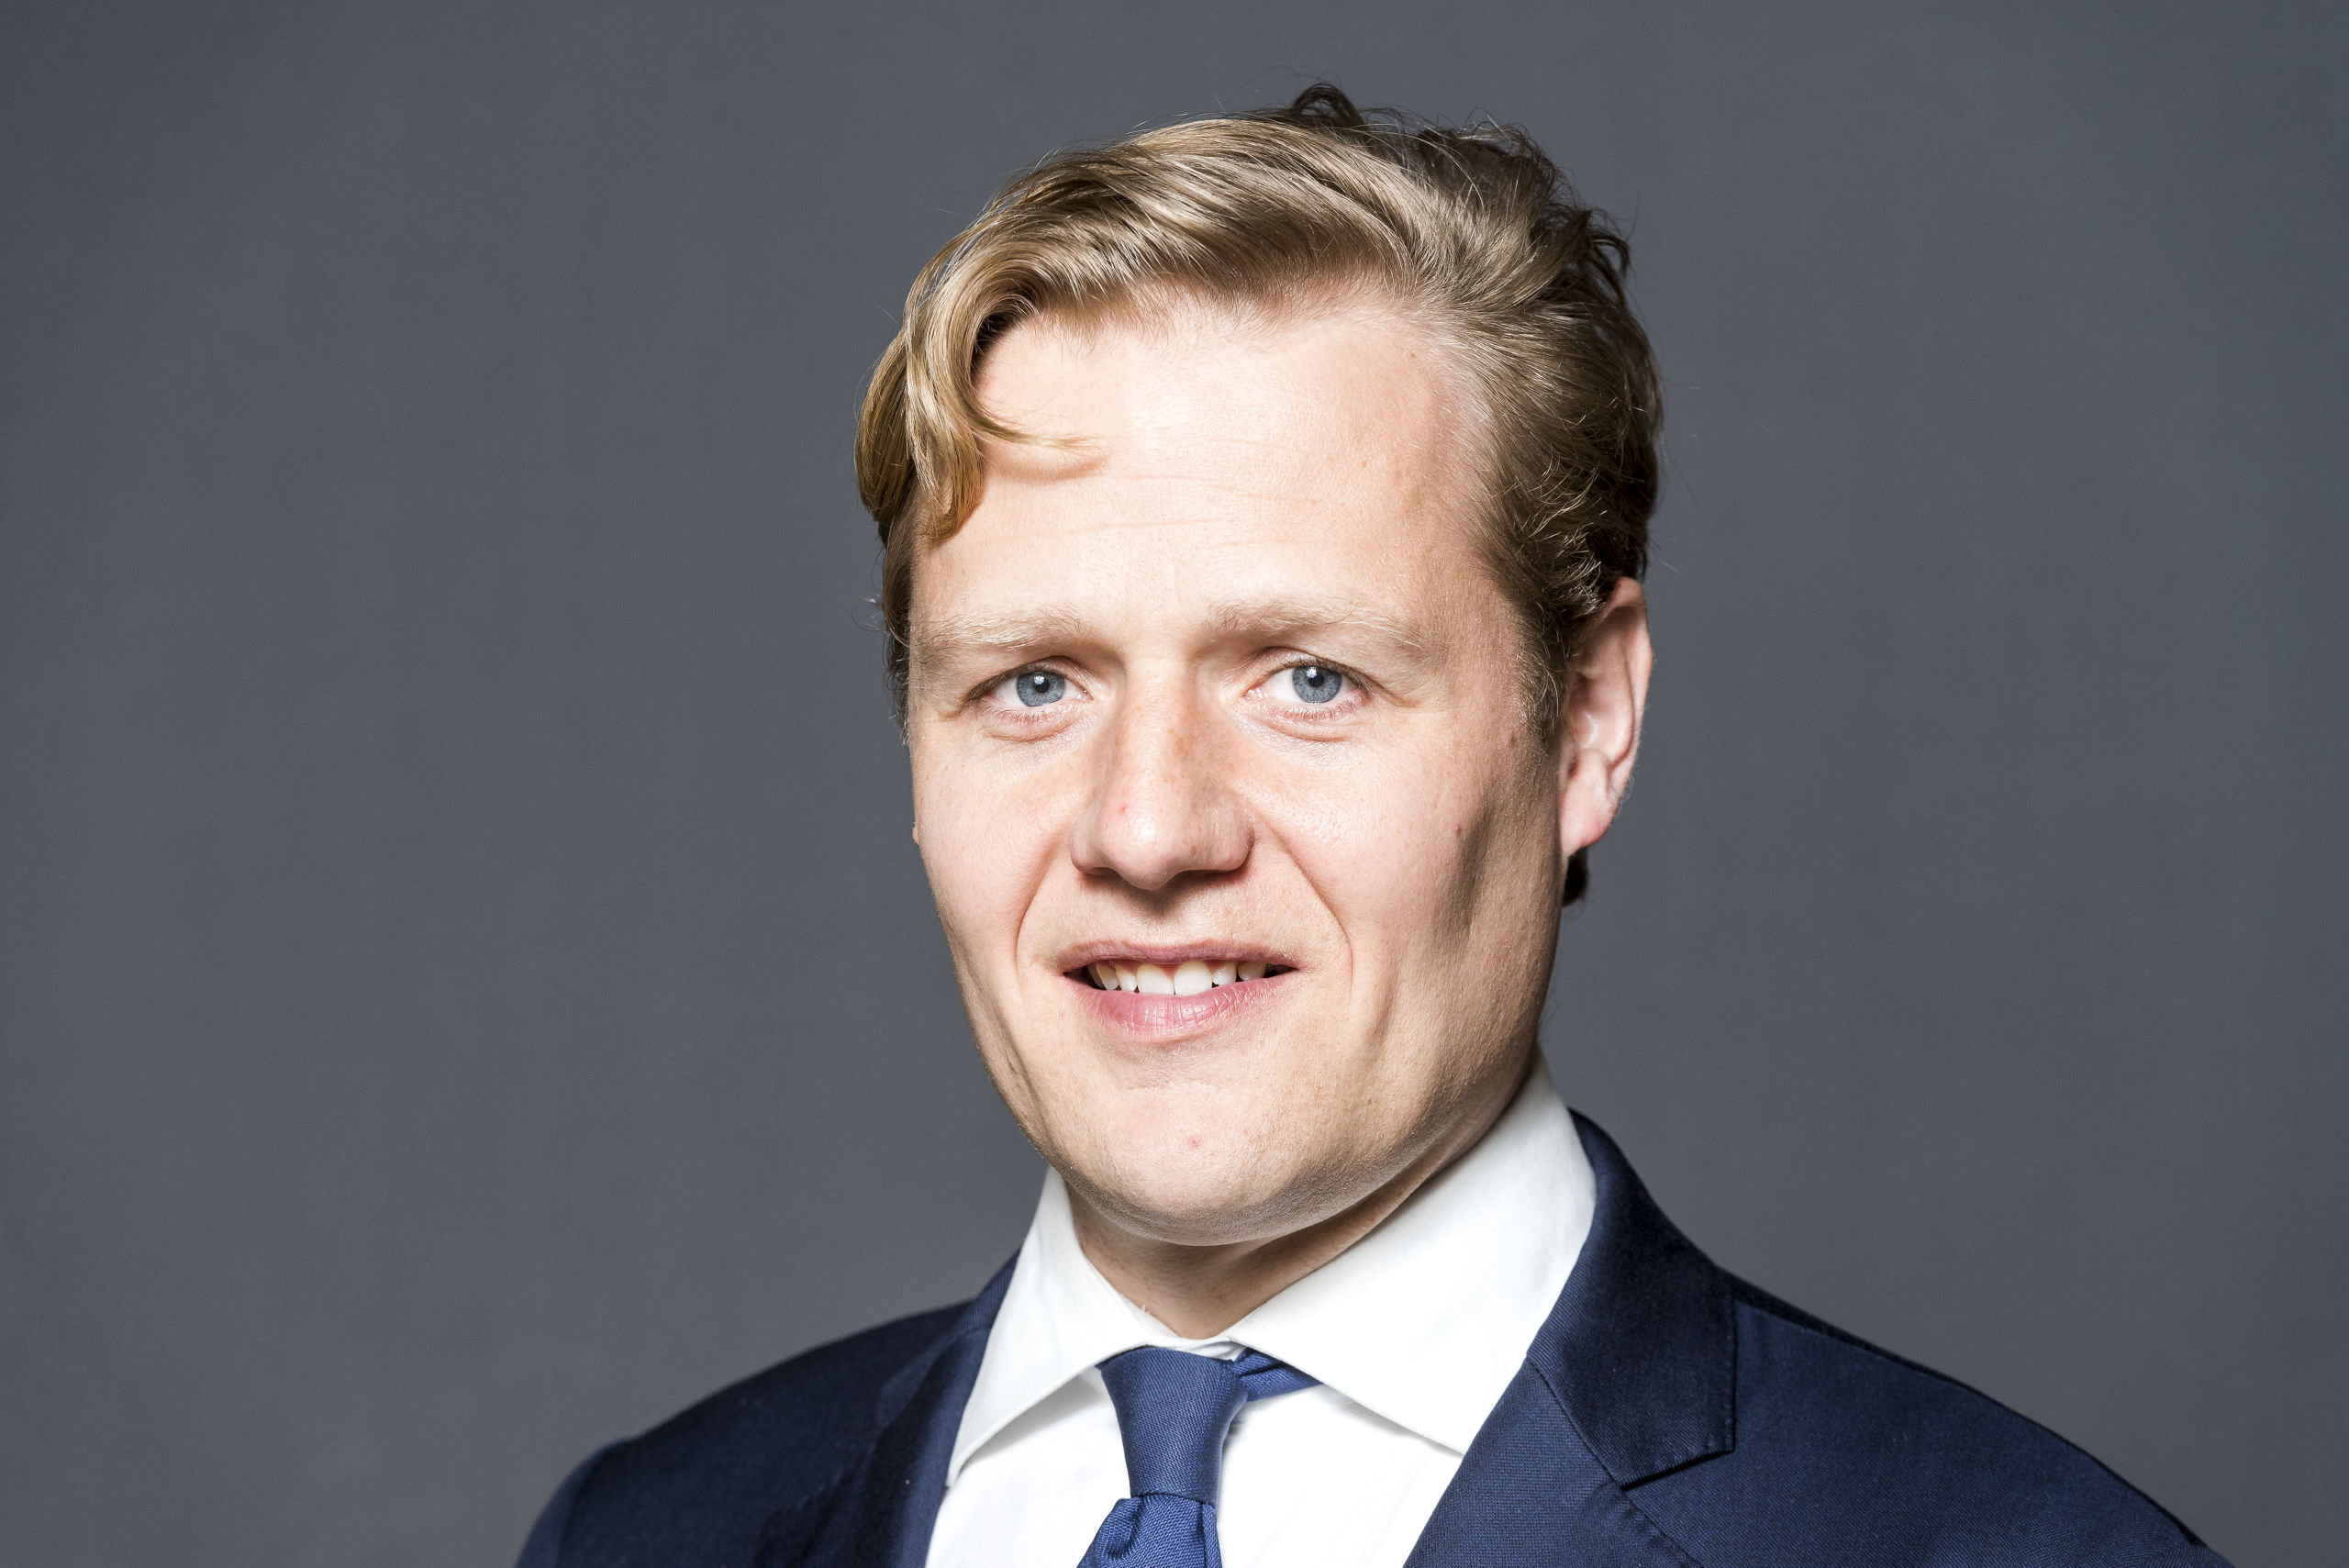 Portret van Jan Middendorp, Tweede Kamerlid voor de VVD.
